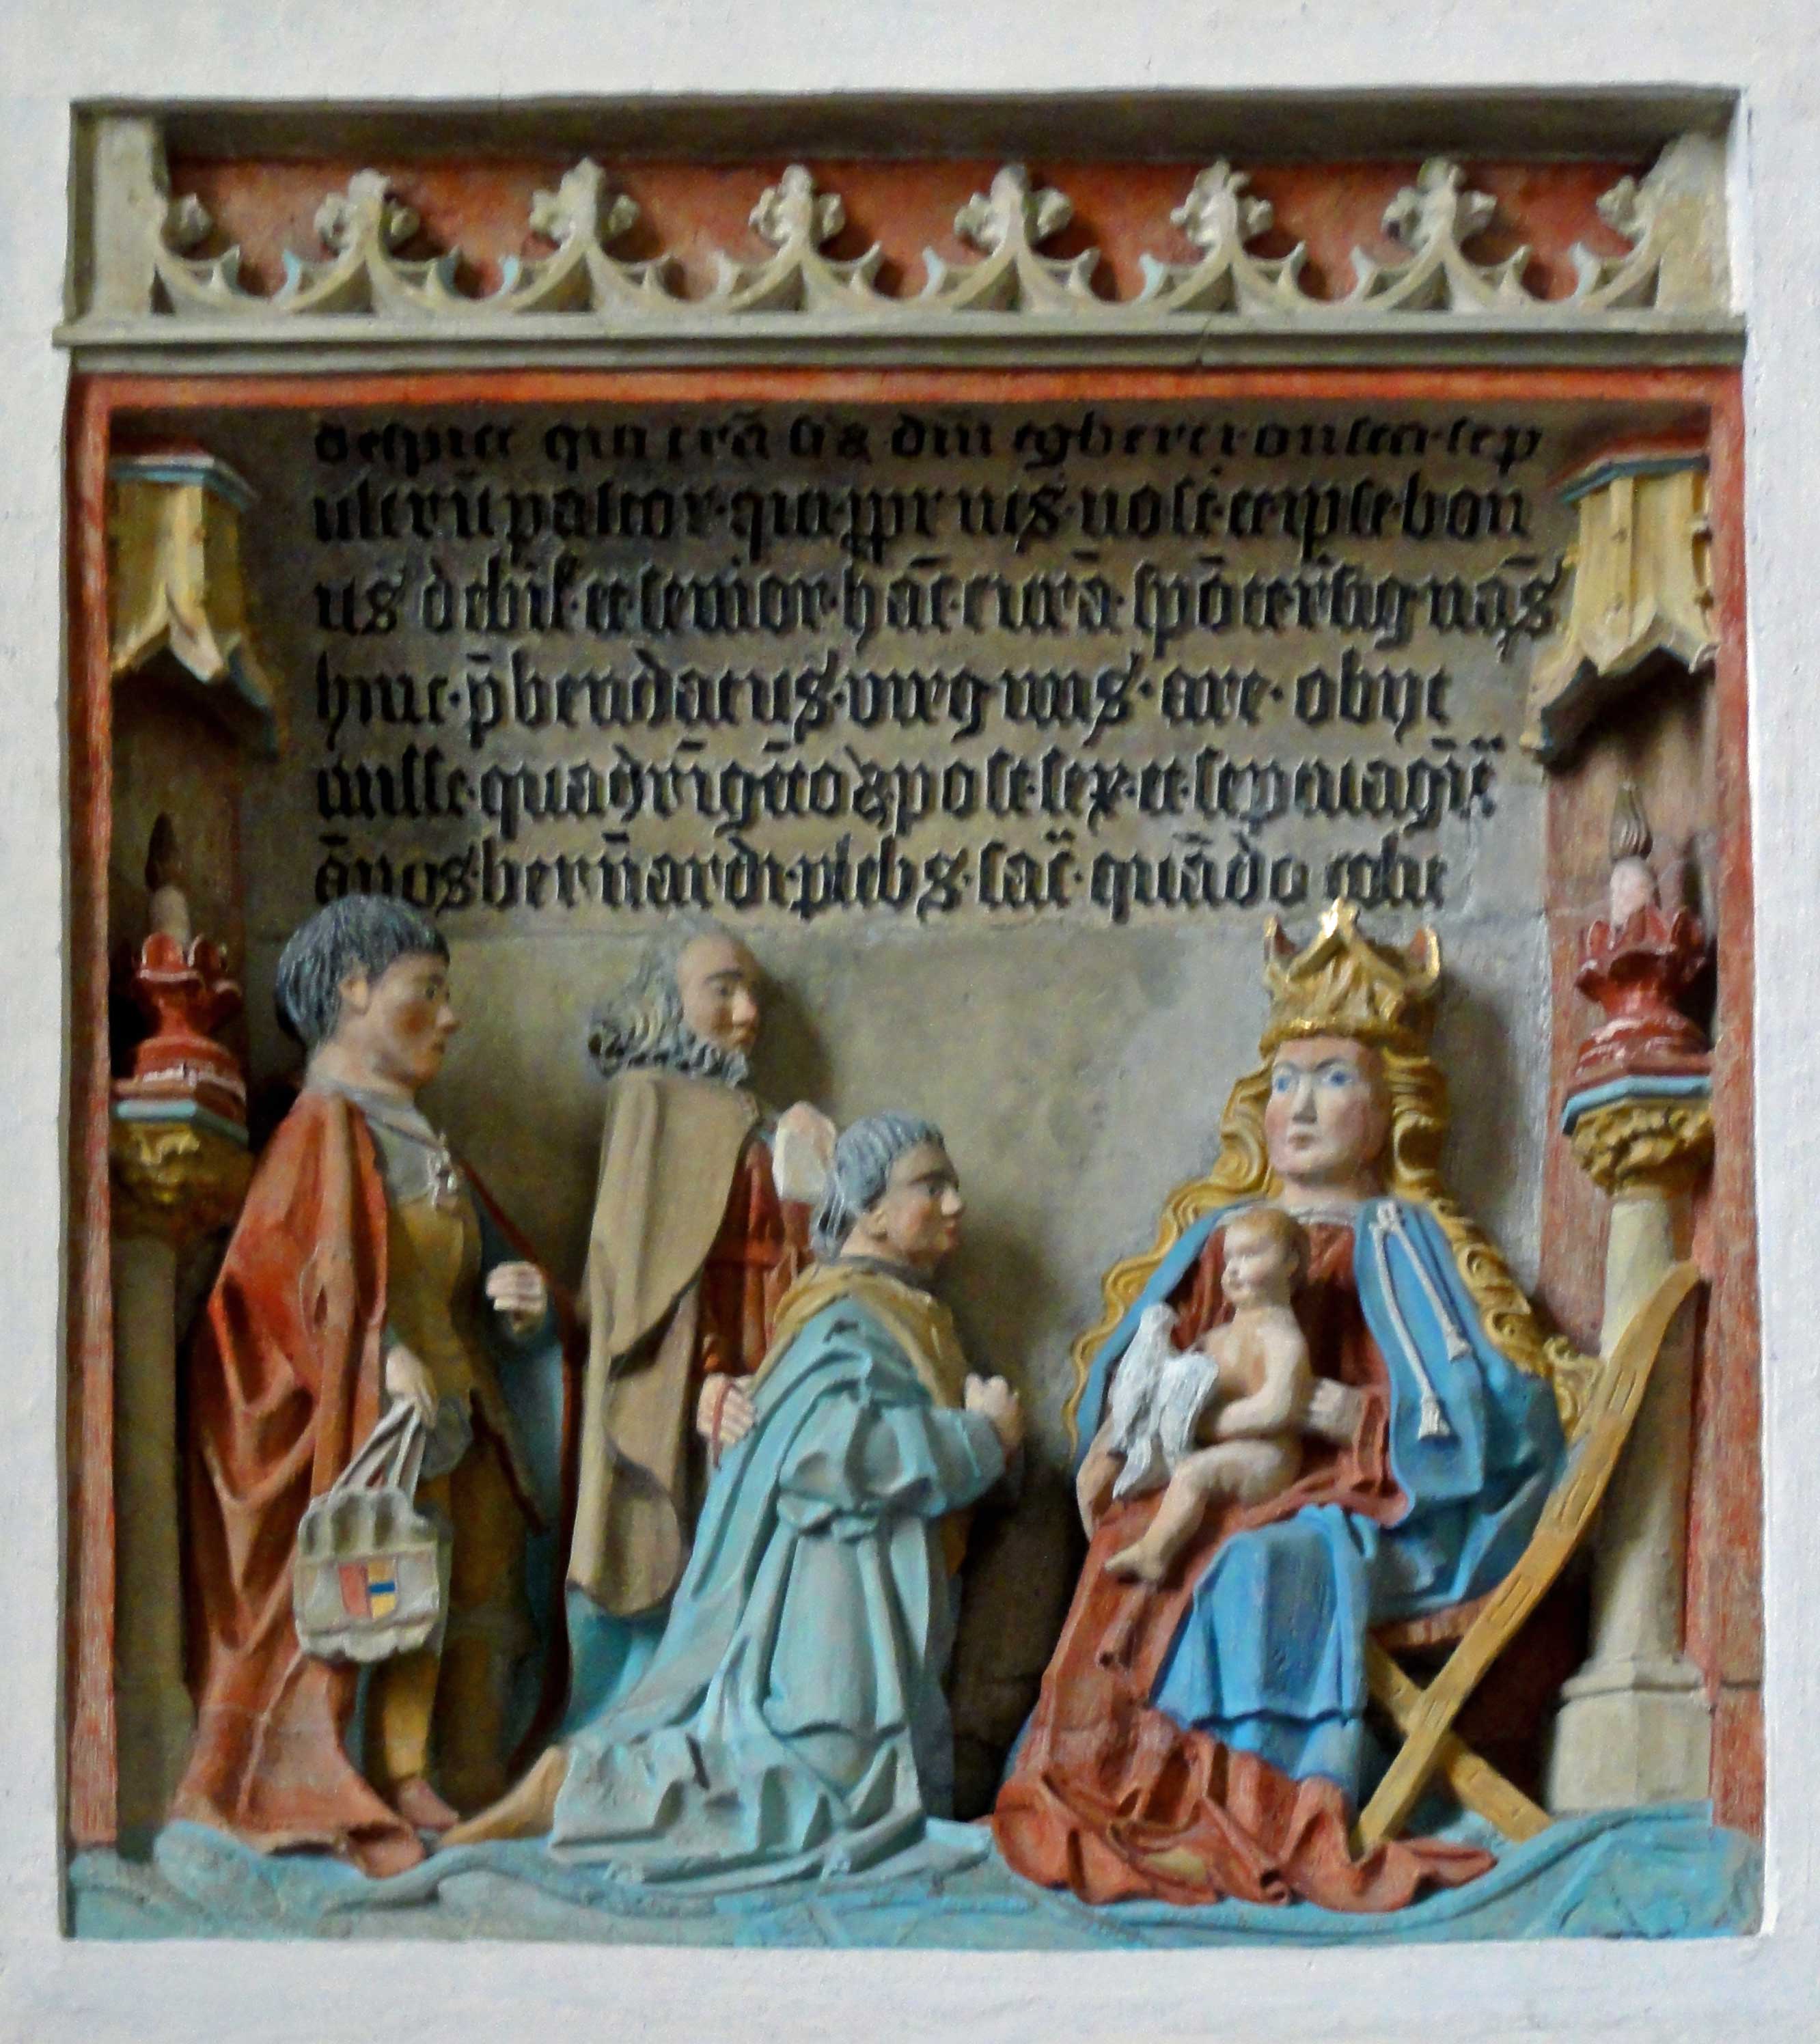 Epitaaf voor Egbert Onsta Sint Hippolytuskerk in Middelstum. Op dit epitaaf voor de priester Egbert Onsta zou Onno van Ewsum wellicht achter de geknielde priester staan (09).